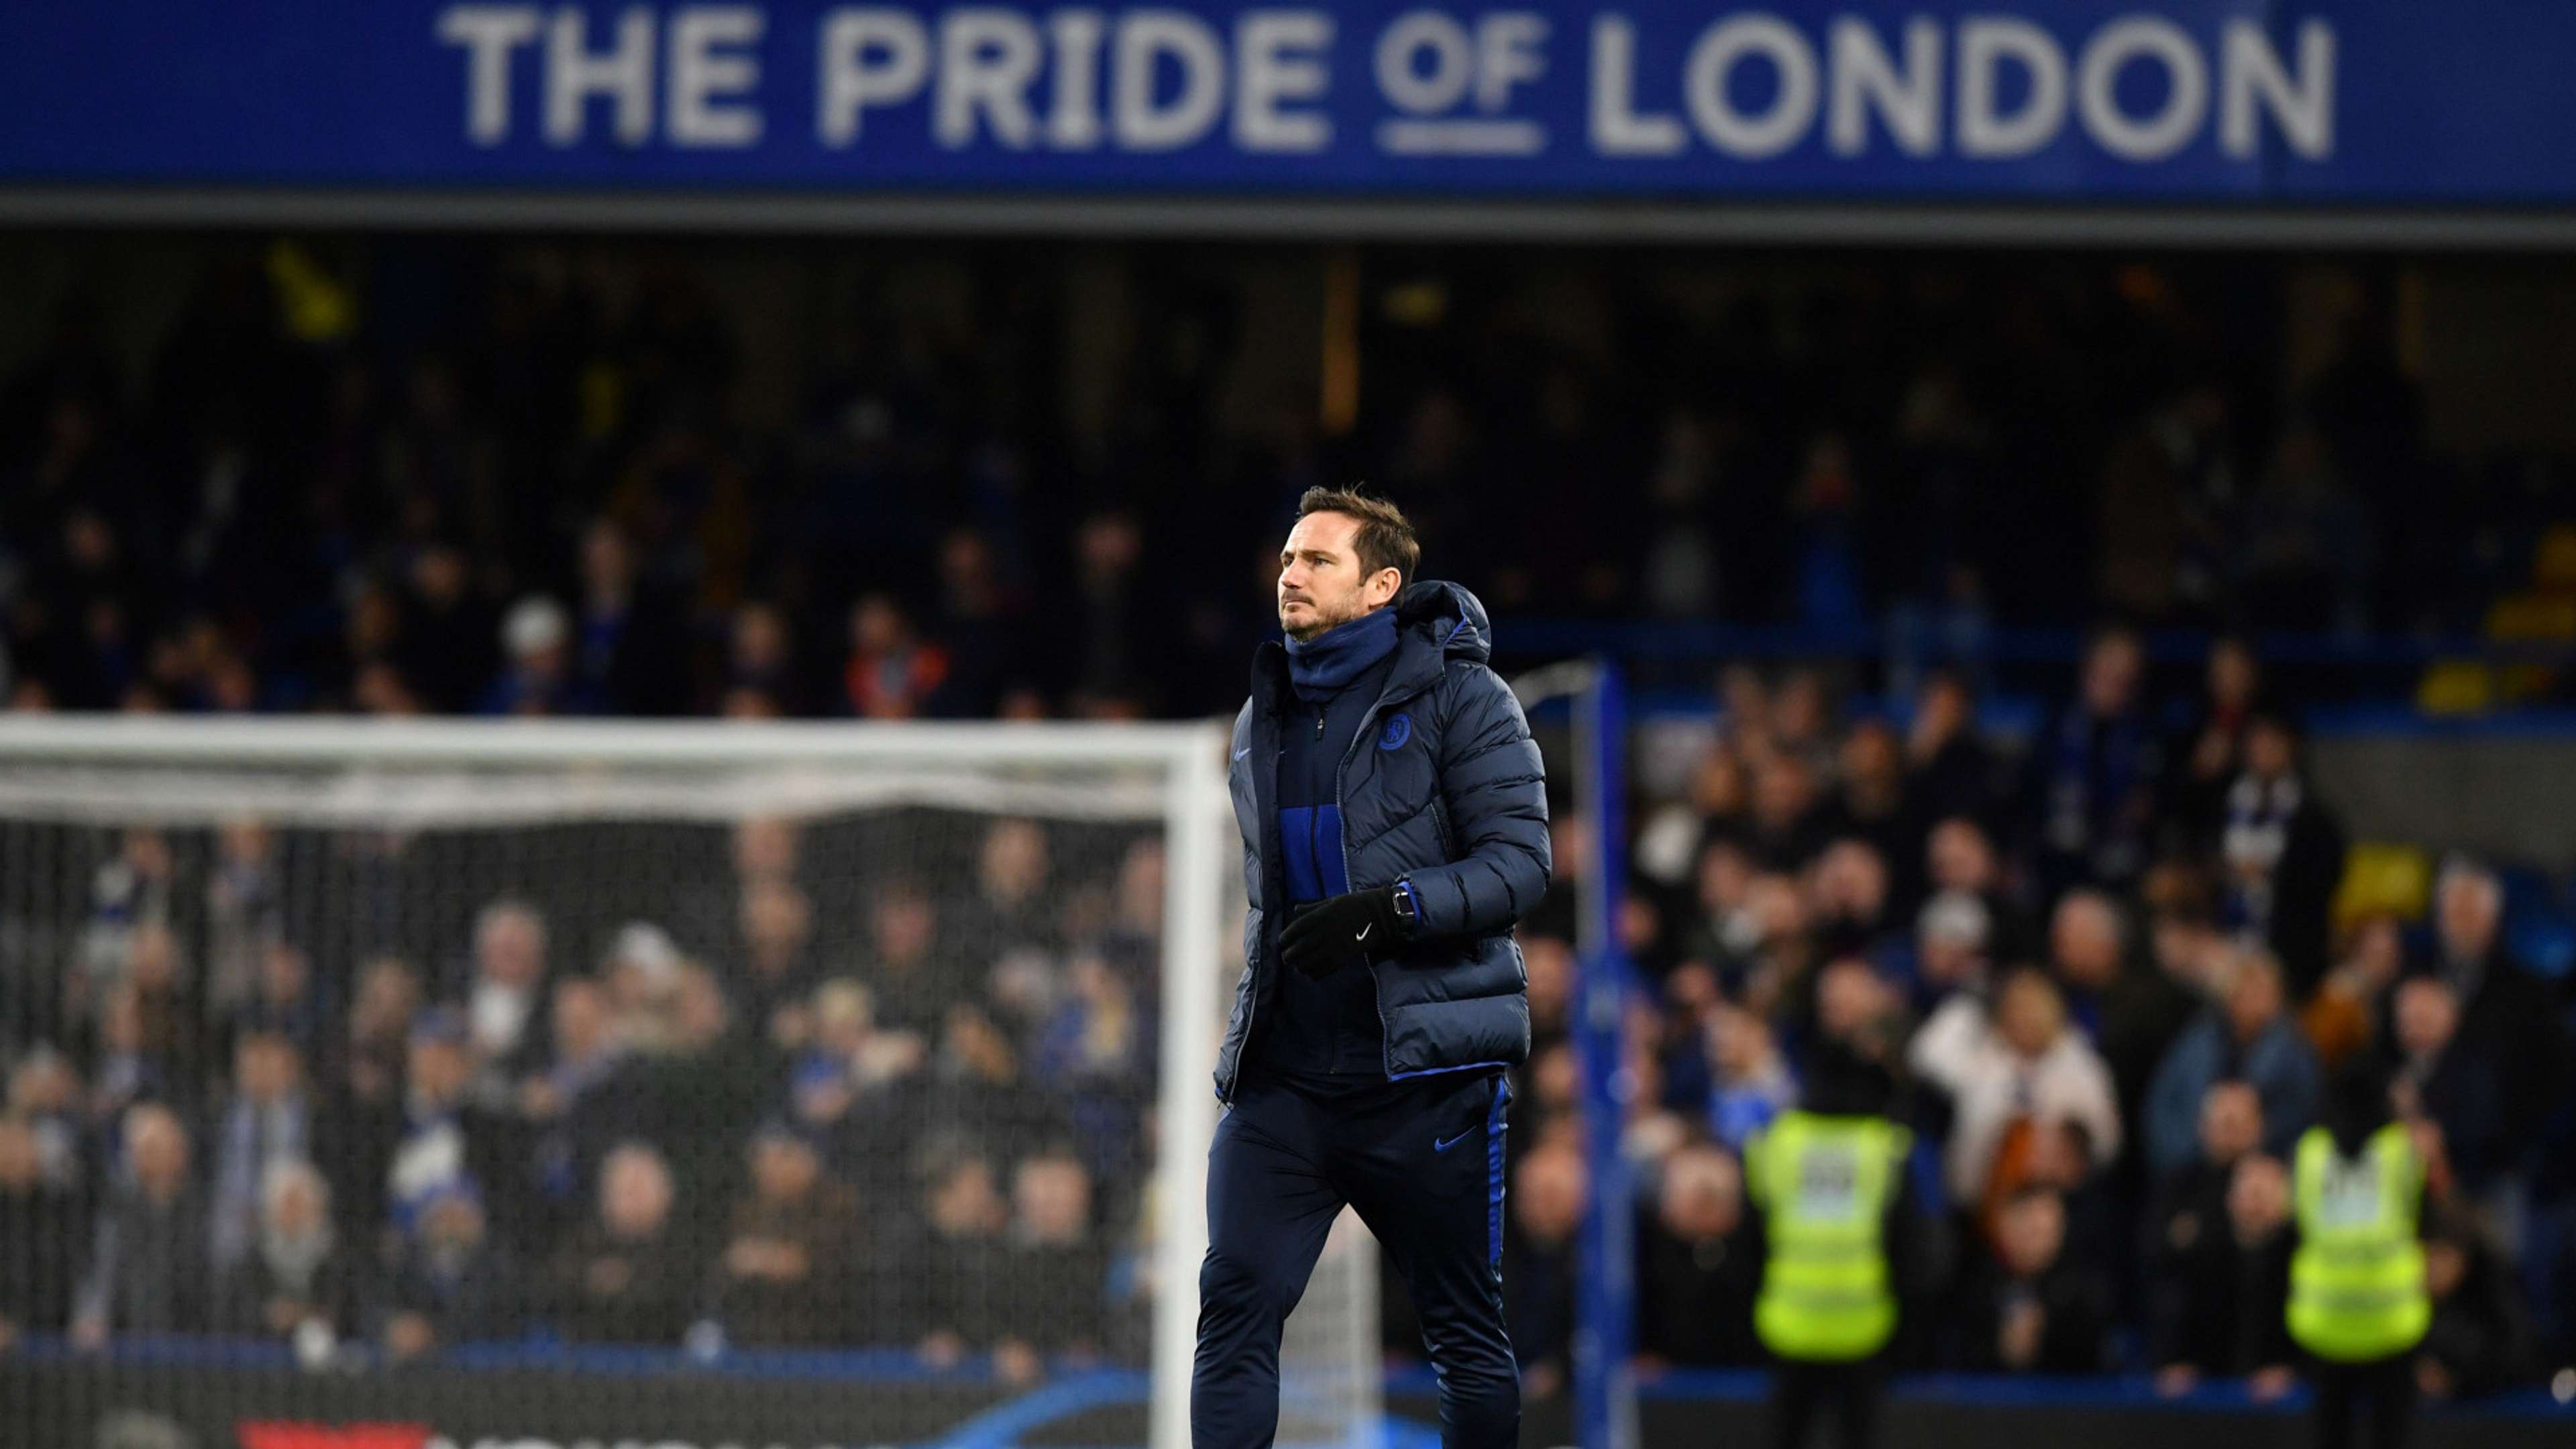 Frank Lampard Chelsea at Stamford Bridge